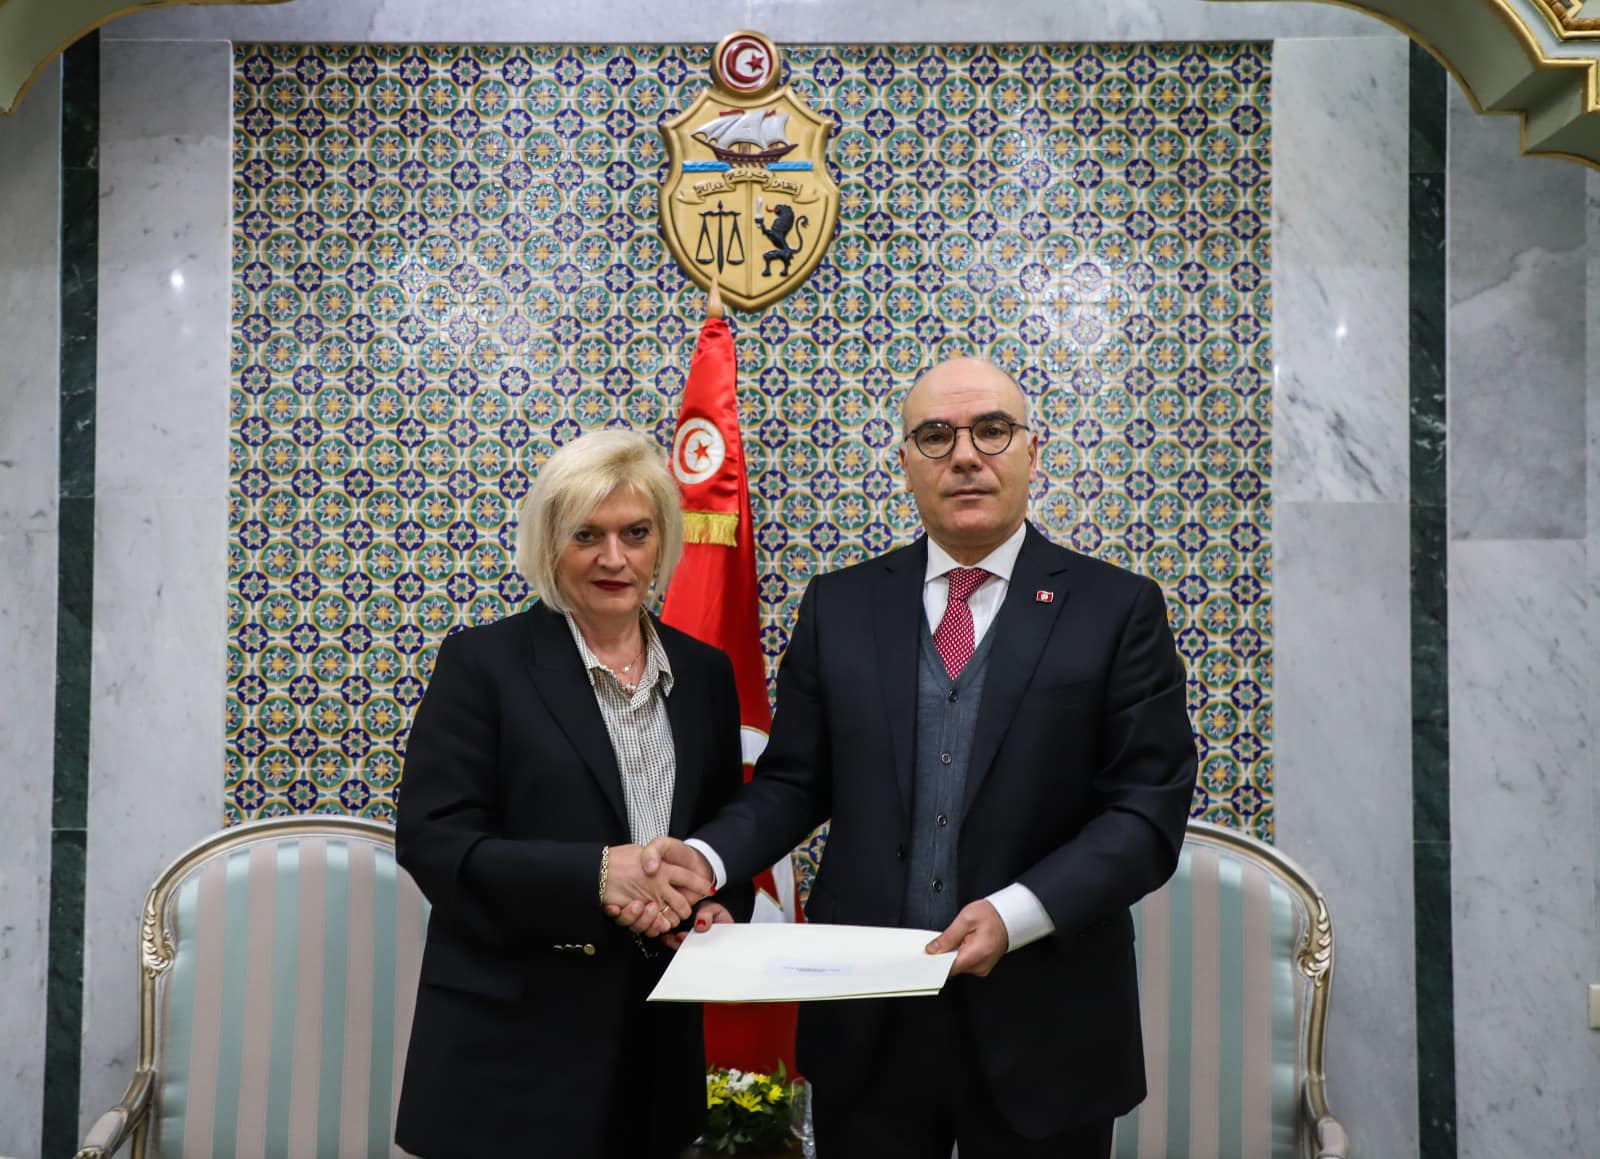 وزير الخارجية يتسلم أوراق اعتماد السفيرة الجديدة لصربيا بتونس